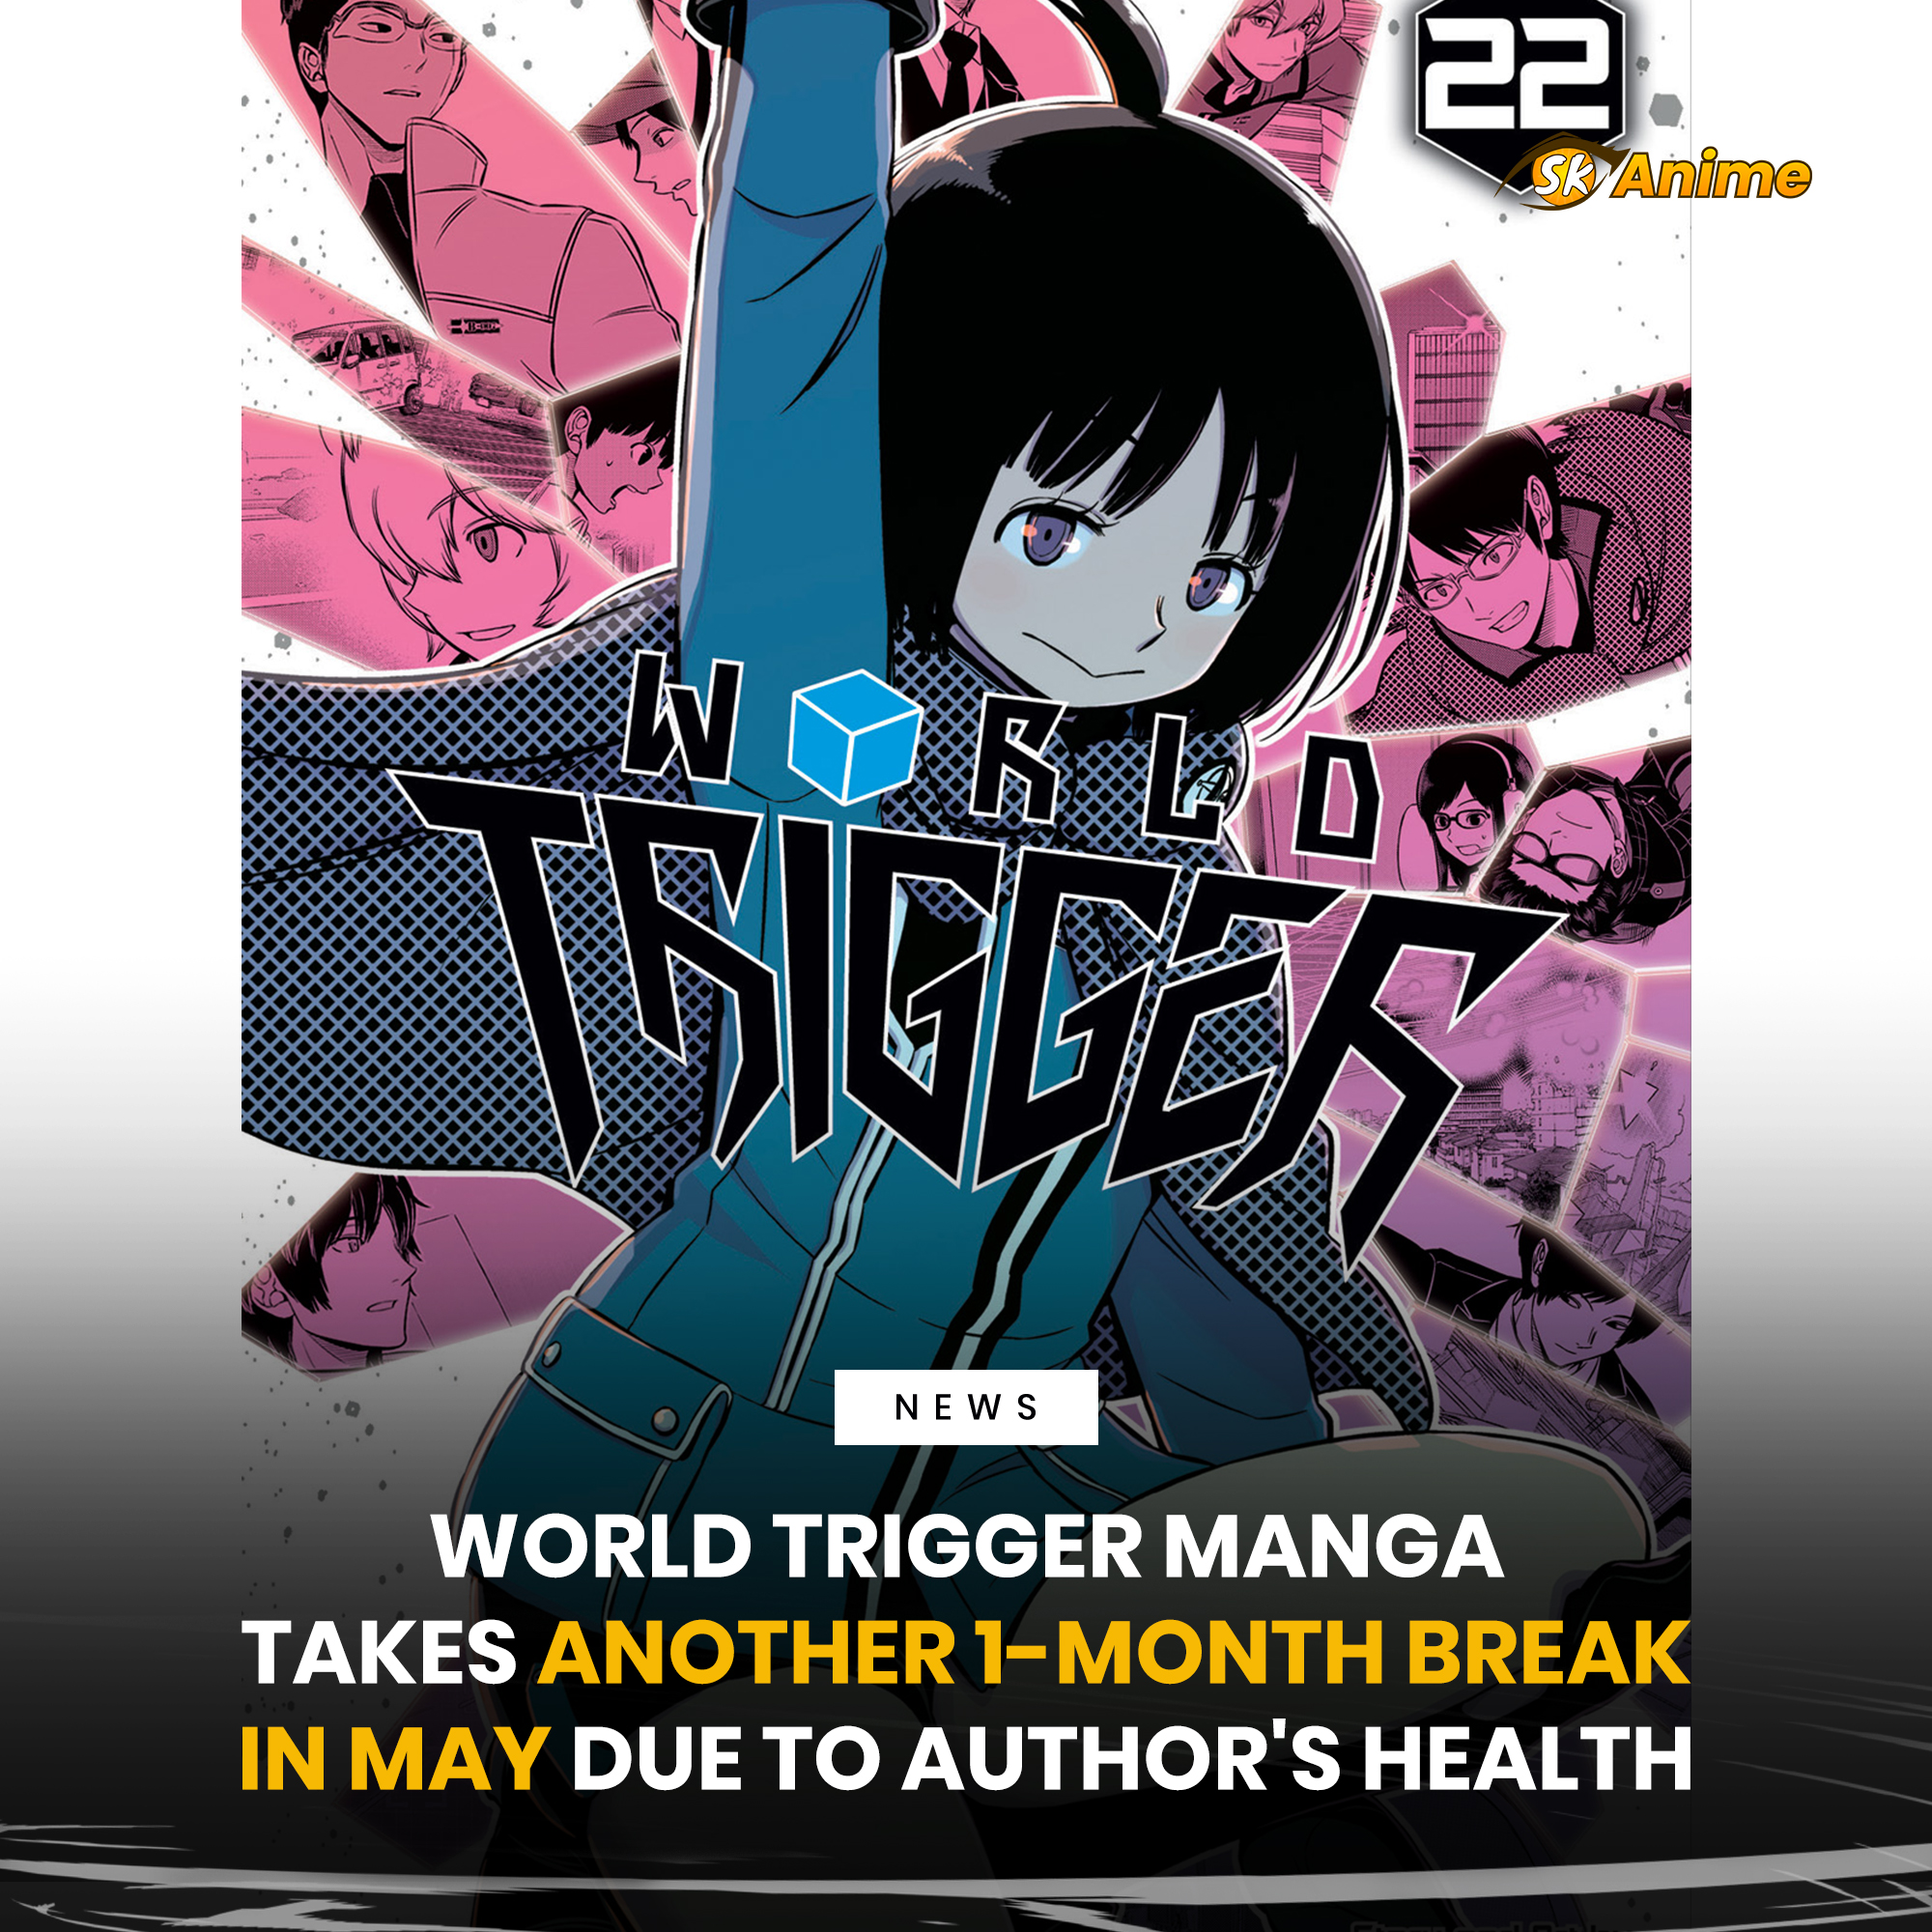 World Trigger tạm ngừng hoạt động do các vấn đề về sức khỏe của chính tác  giả - Kodoani - Kênh thông tin anime - manga - game văn hóa Nhật Bản